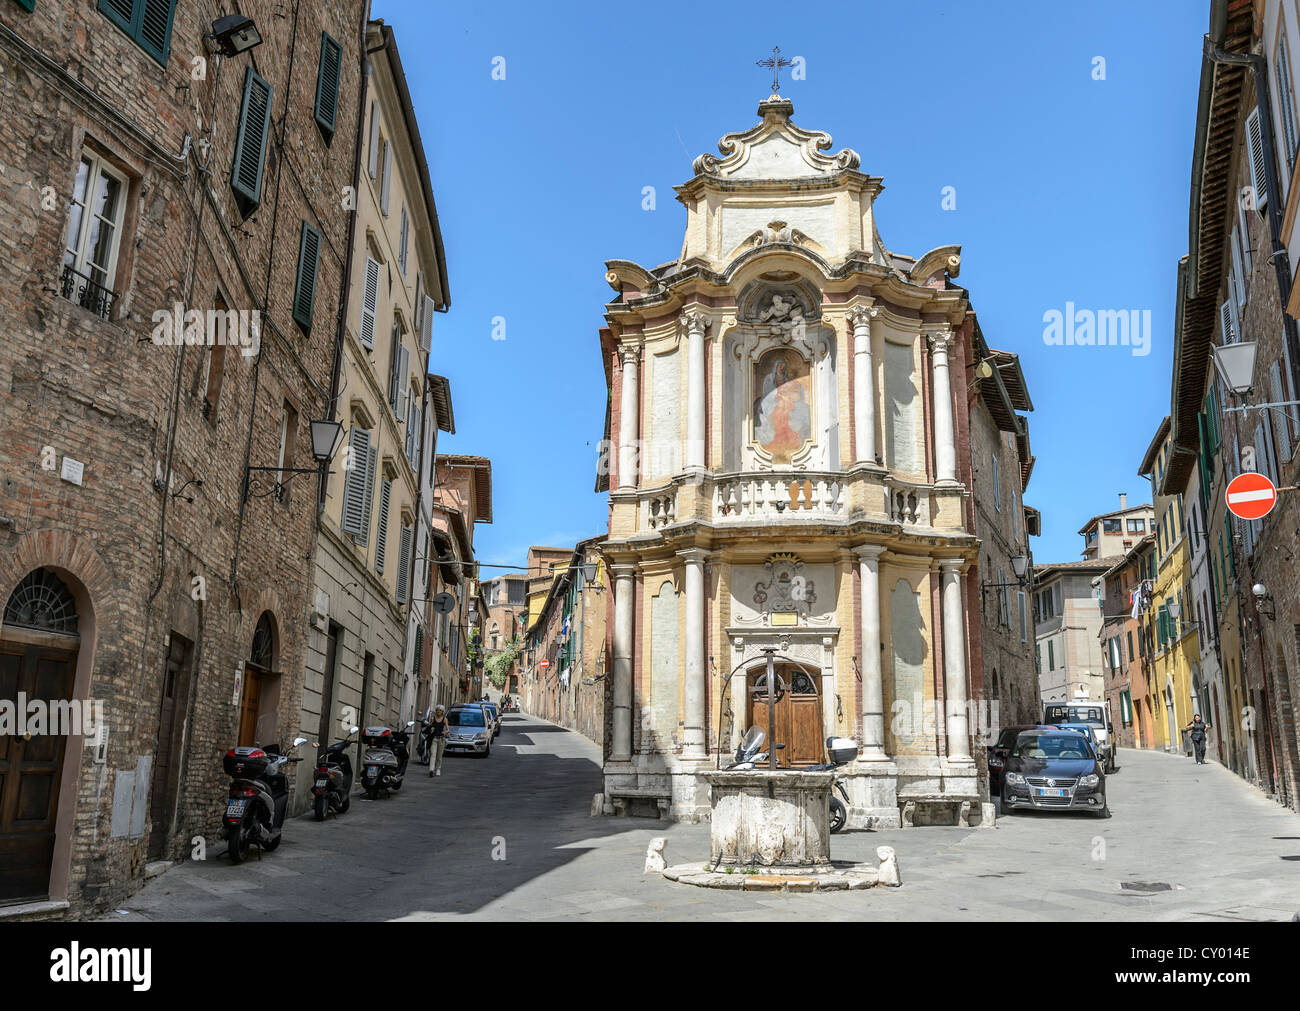 Chiesa dell Chiocciola, Casa del Cavallo, historic centre of Siena, Tuscany, Italy, Europe Stock Photo